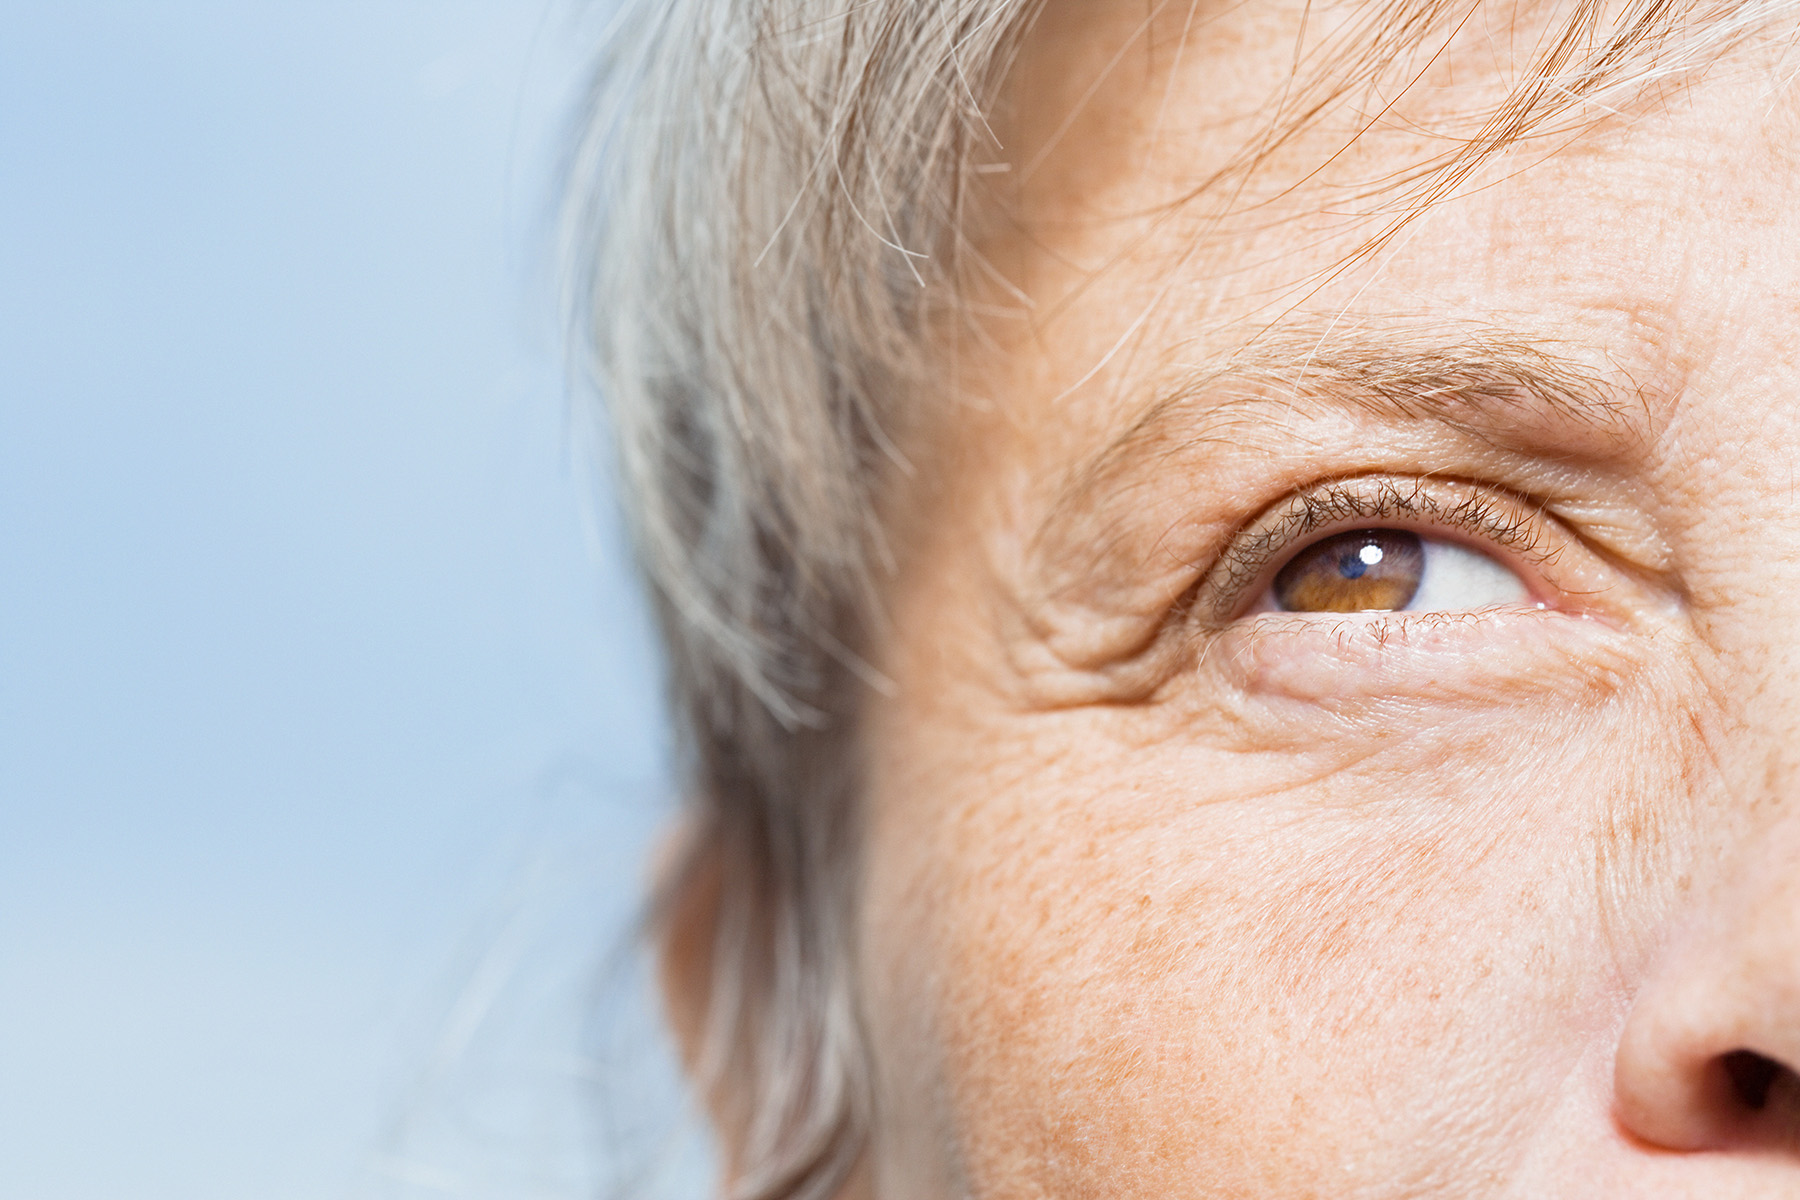 Gesichtsausschnitt mit Fokus auf das Auge einer älteren Person